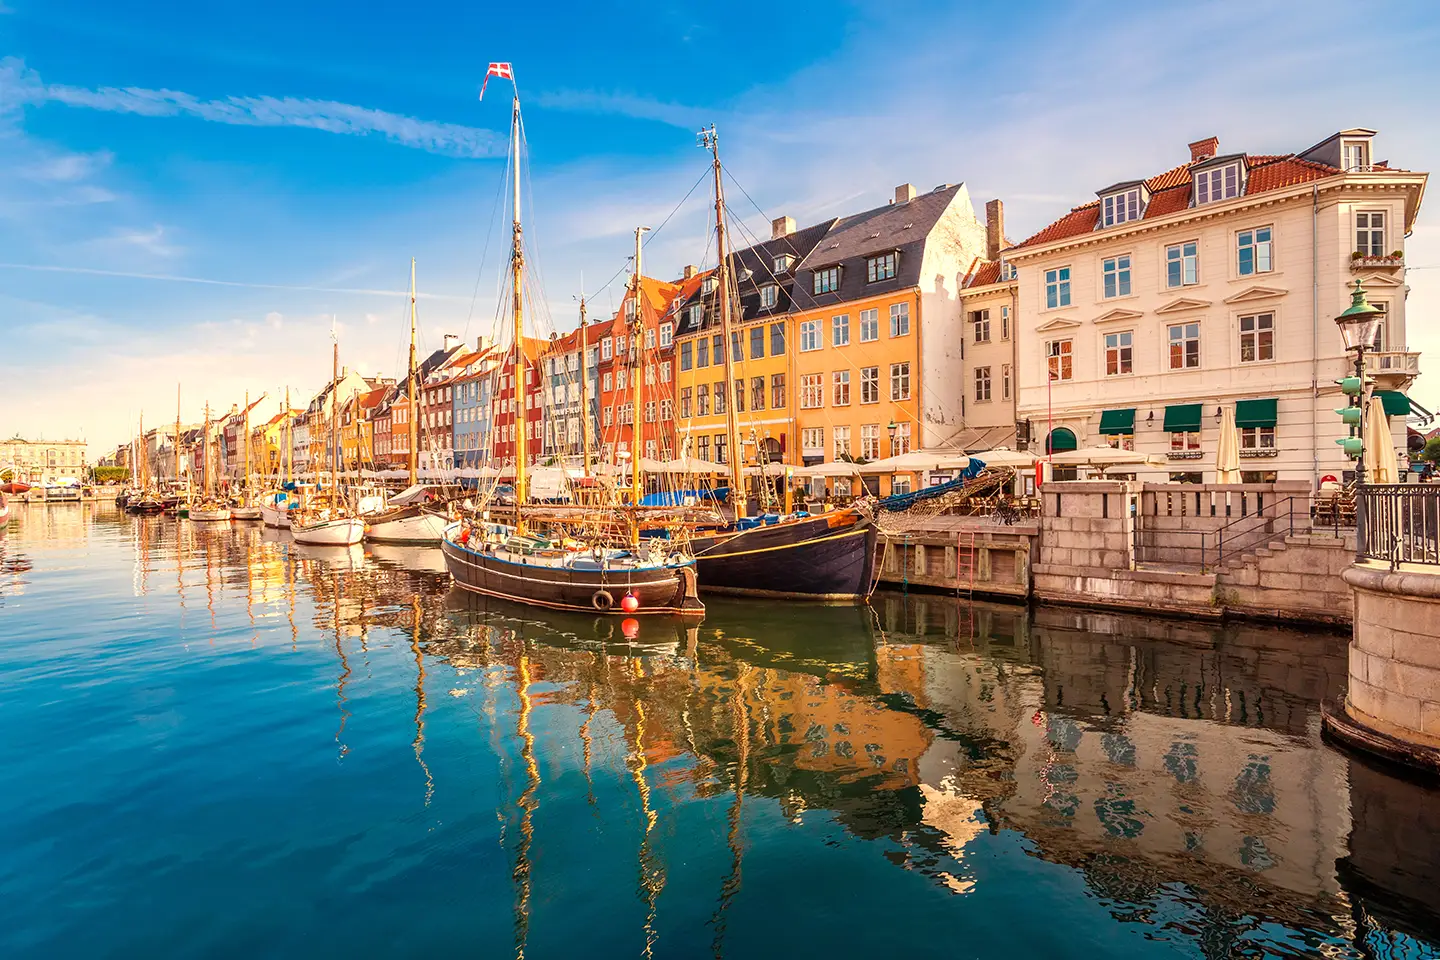 Kopenhagen Kurzurlaub mit Besuch von Nyhavn mit seinen bunten Häusern und traditionellen Schiffen am Kanal